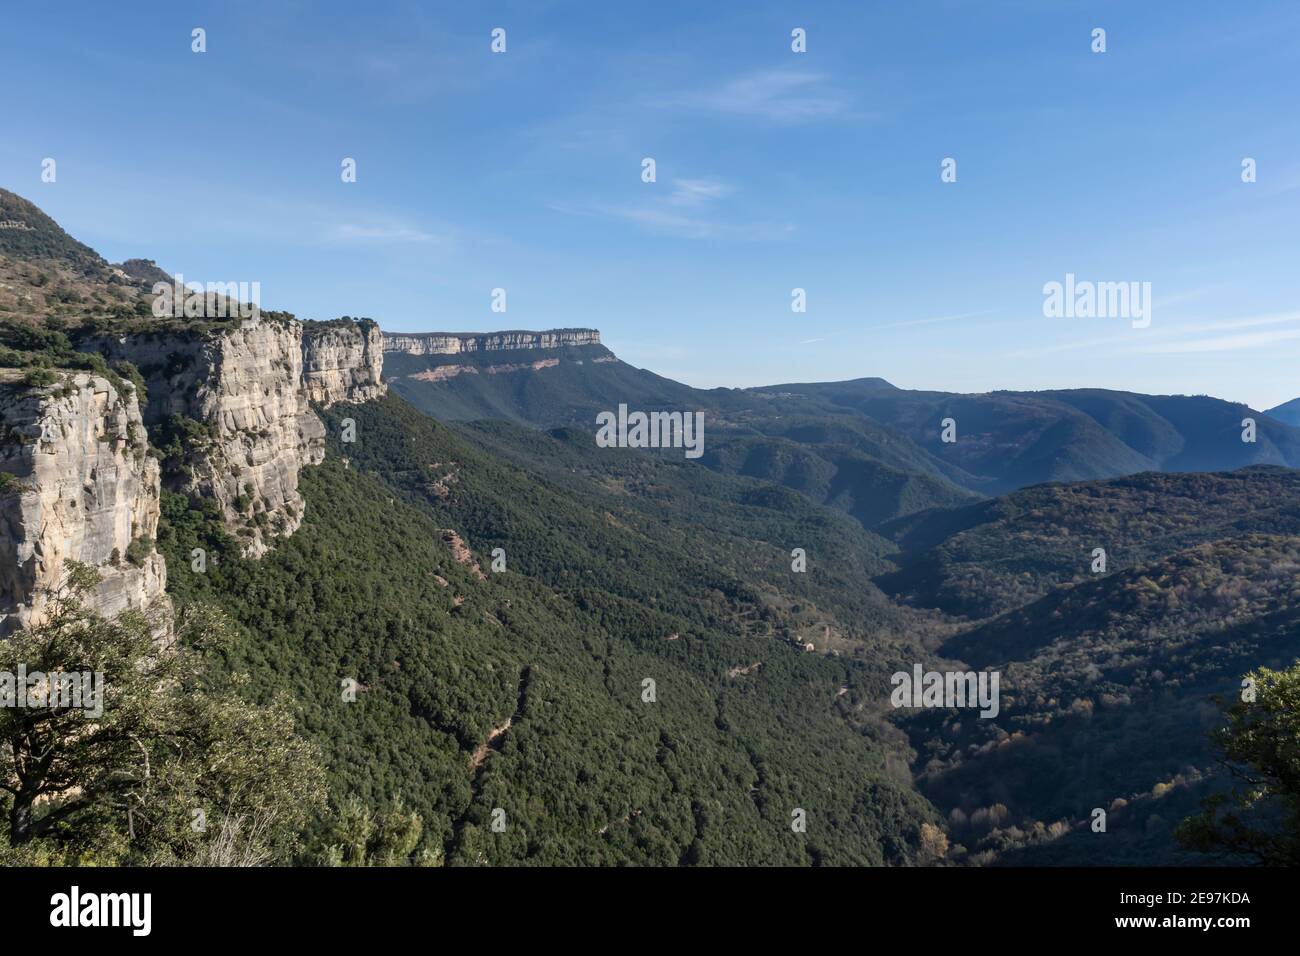 Berglandschaft, malerischer Wald, ländliche Landschaft in der Nähe von Rupit in Barcelona, Spanien.Reisen Tourismus und Urlaub auf dem Land Konzept Stockfoto